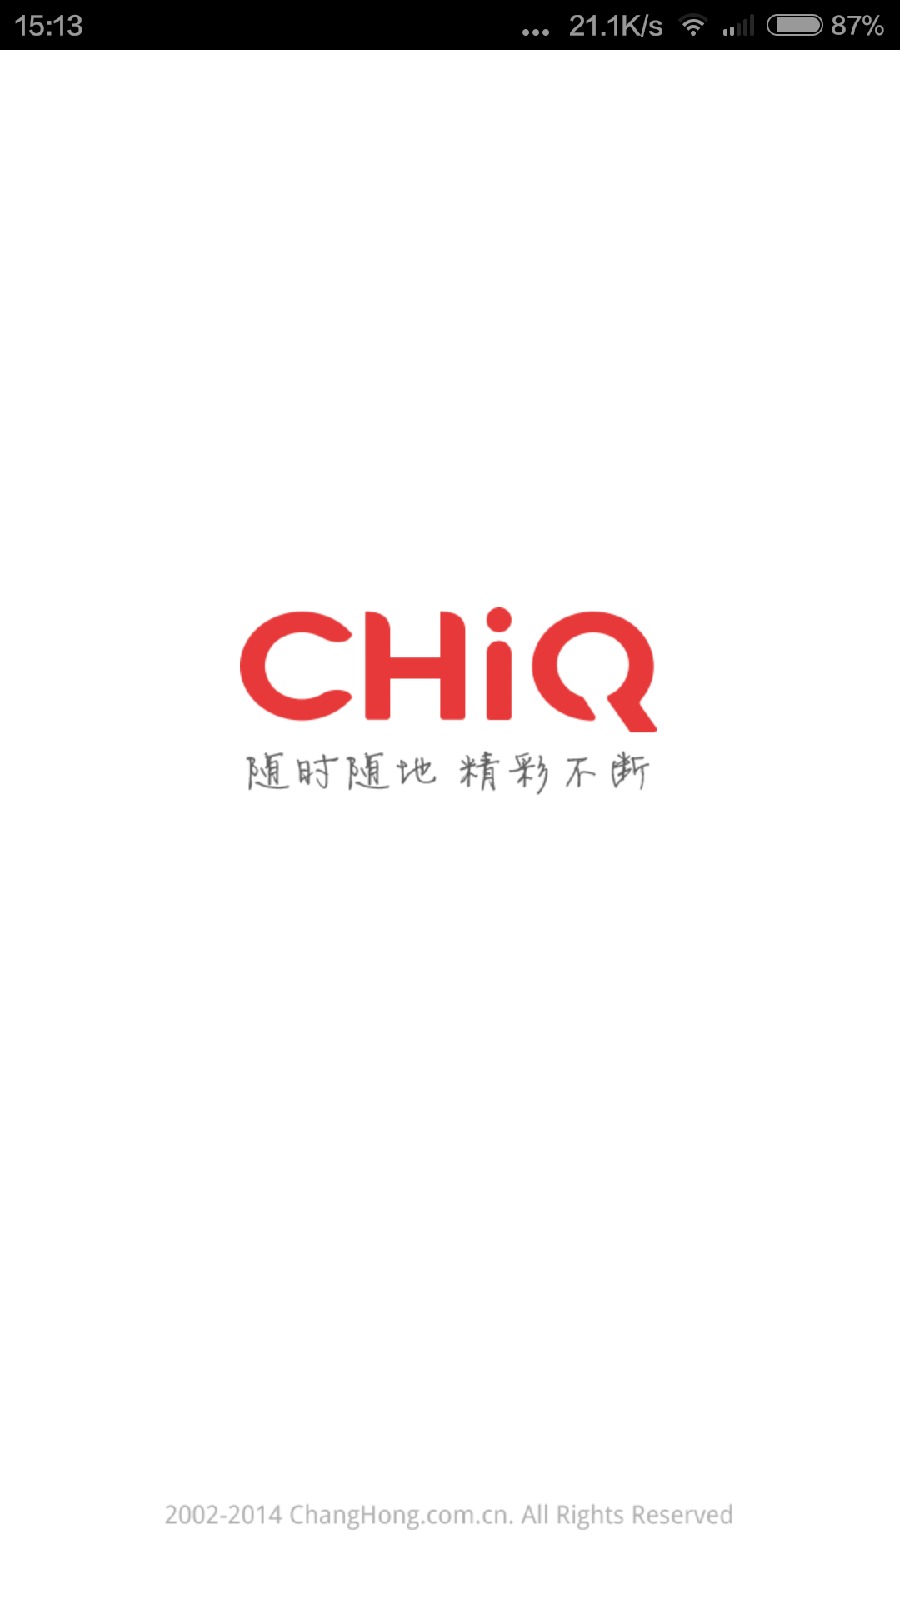 chiq电视手机遥控苹果版 v3.1.22 官方iphone版0